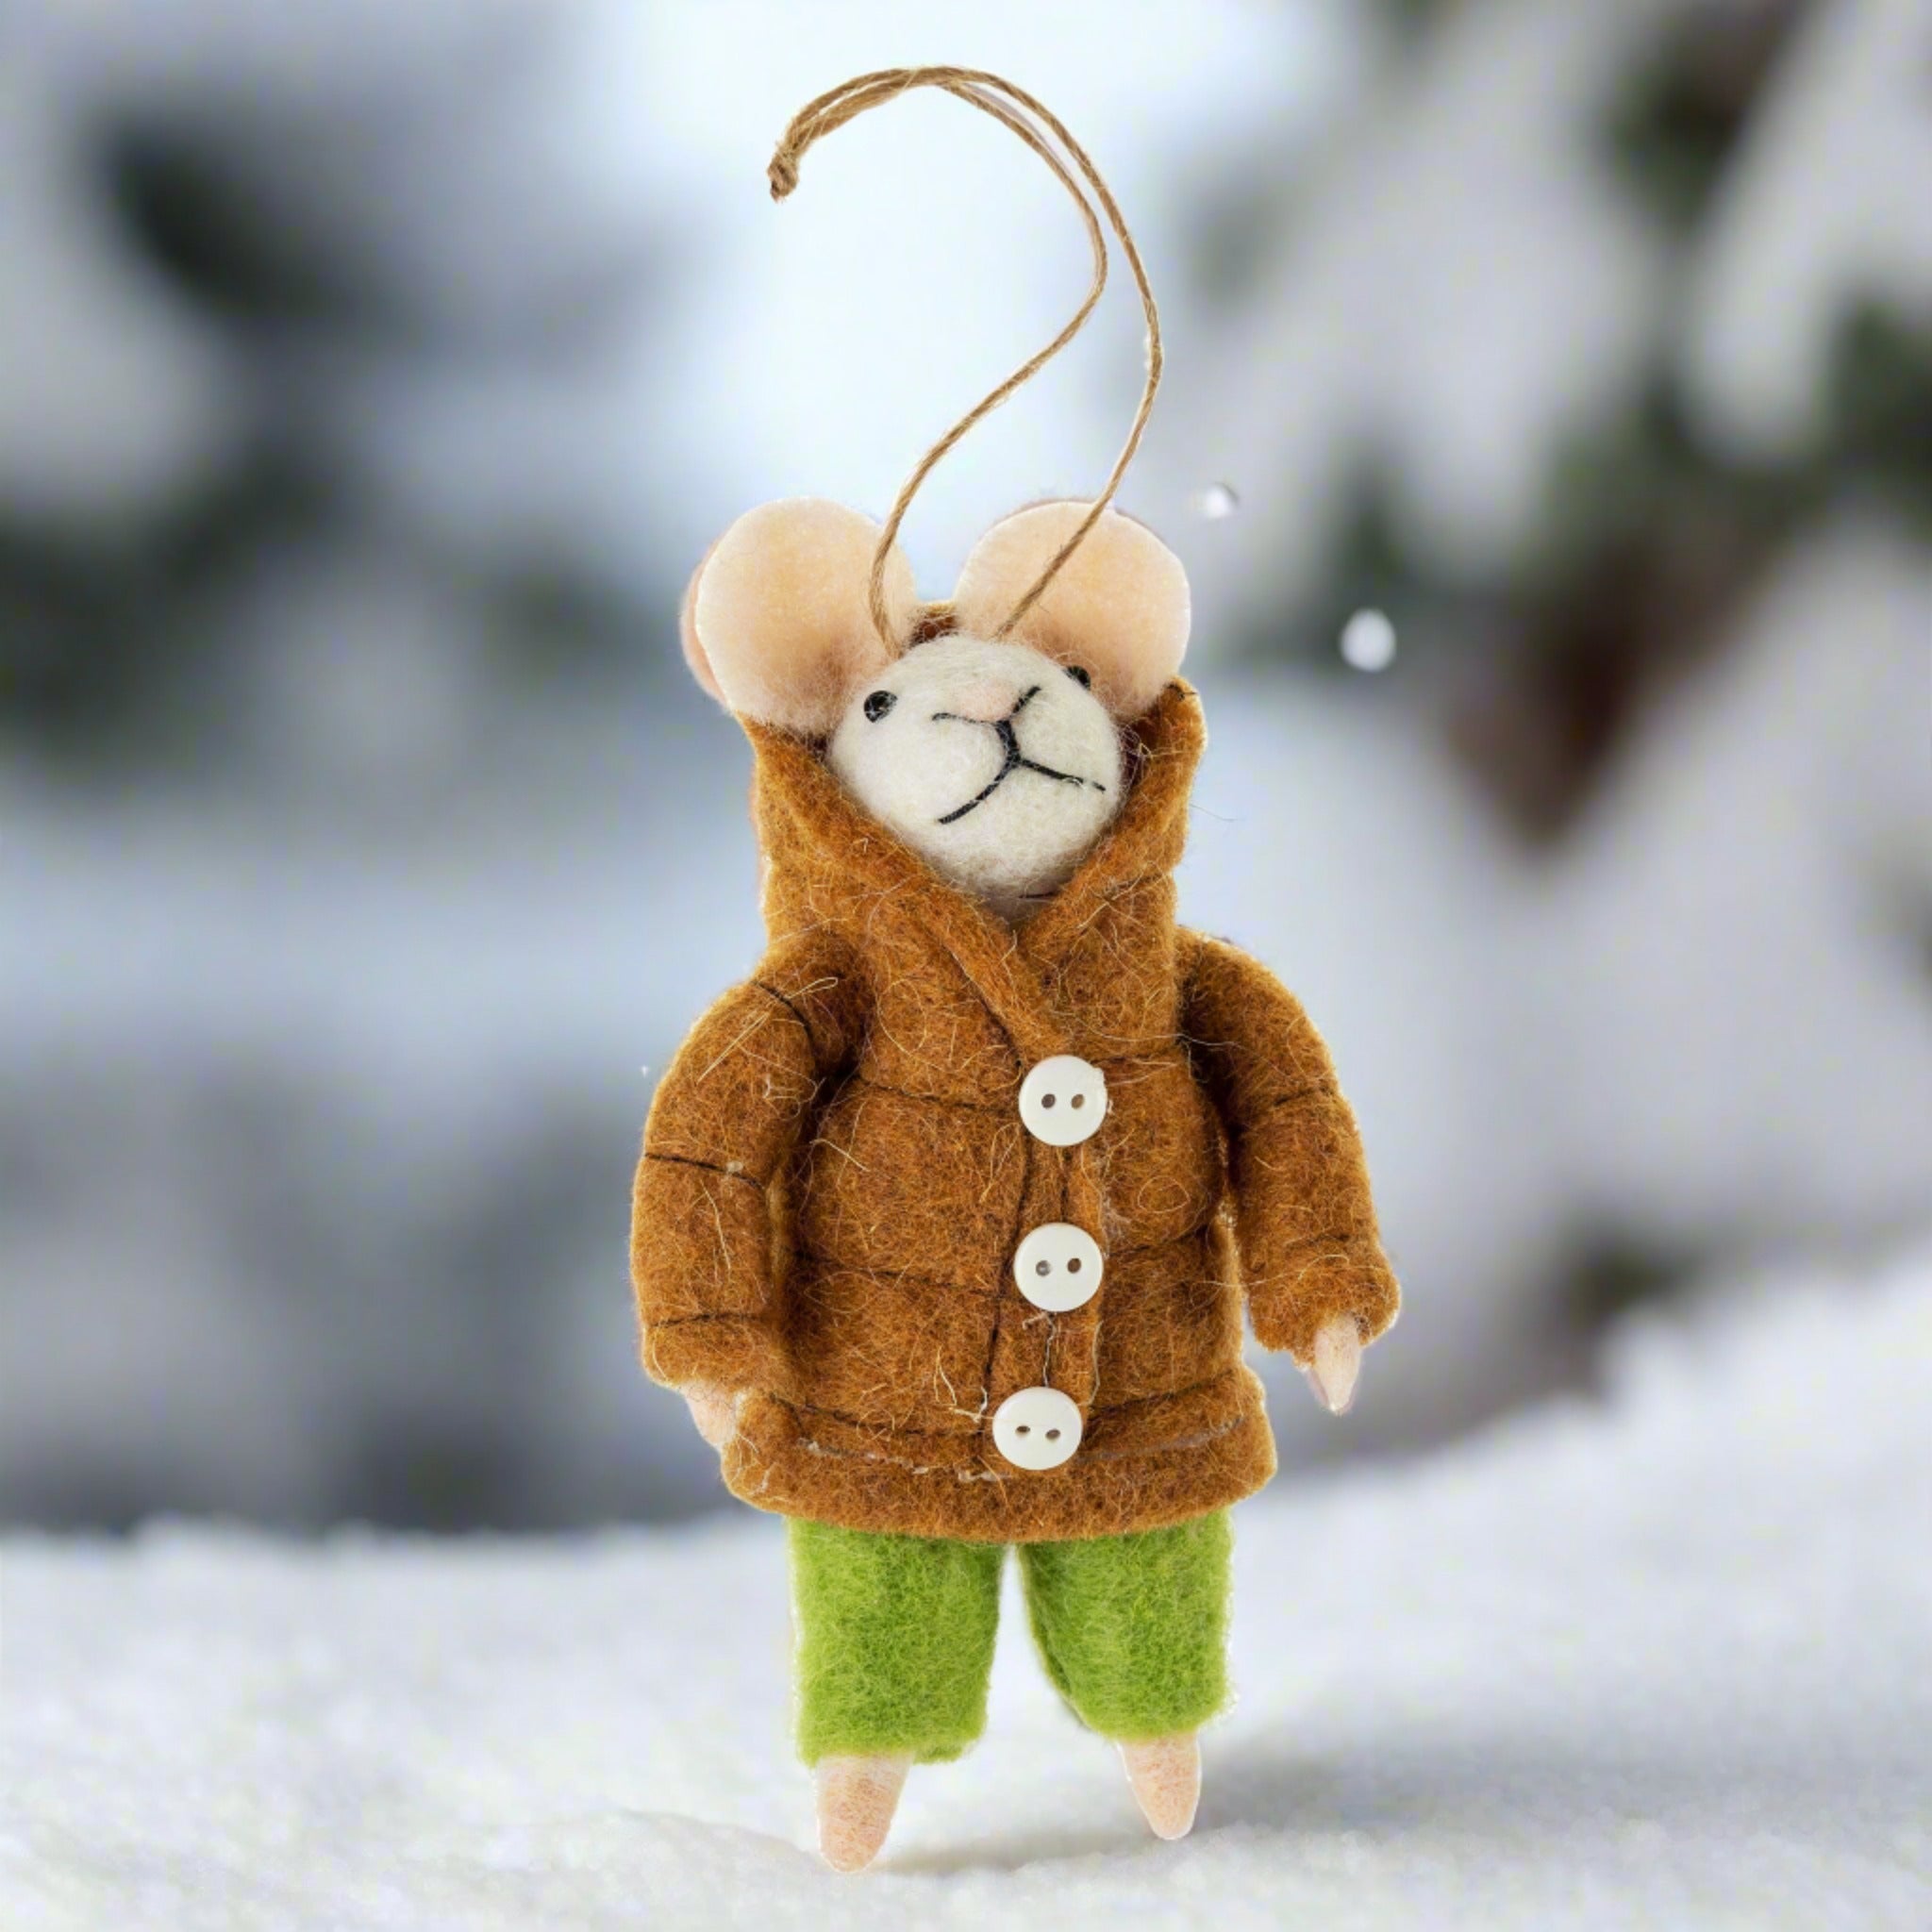 Apres Ski Felt Mice Ornaments/Set Of 2